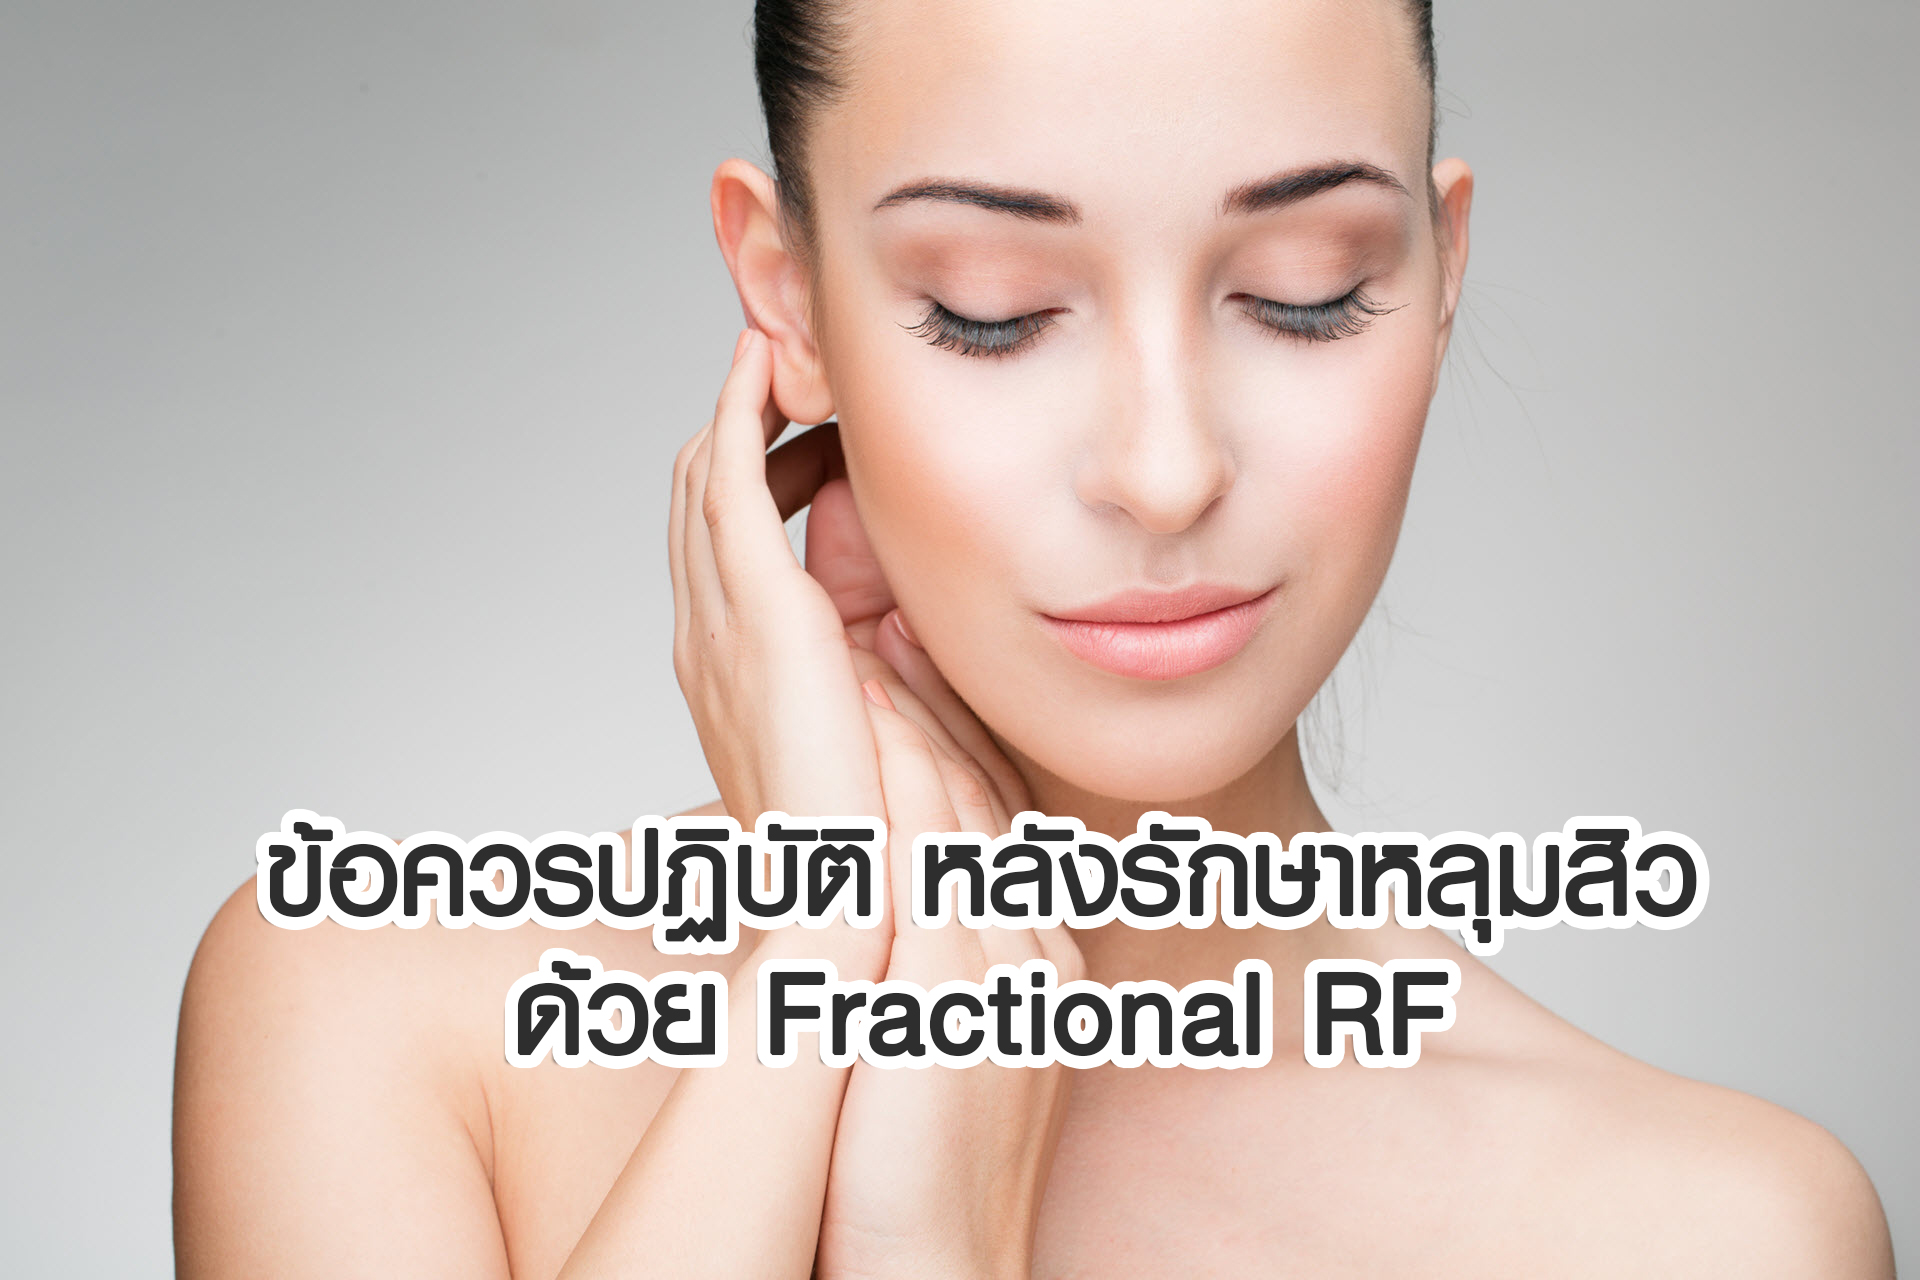 ข้อควรปฏิบัติหลังรักษาหลุมสิวด้วย Fractional RF